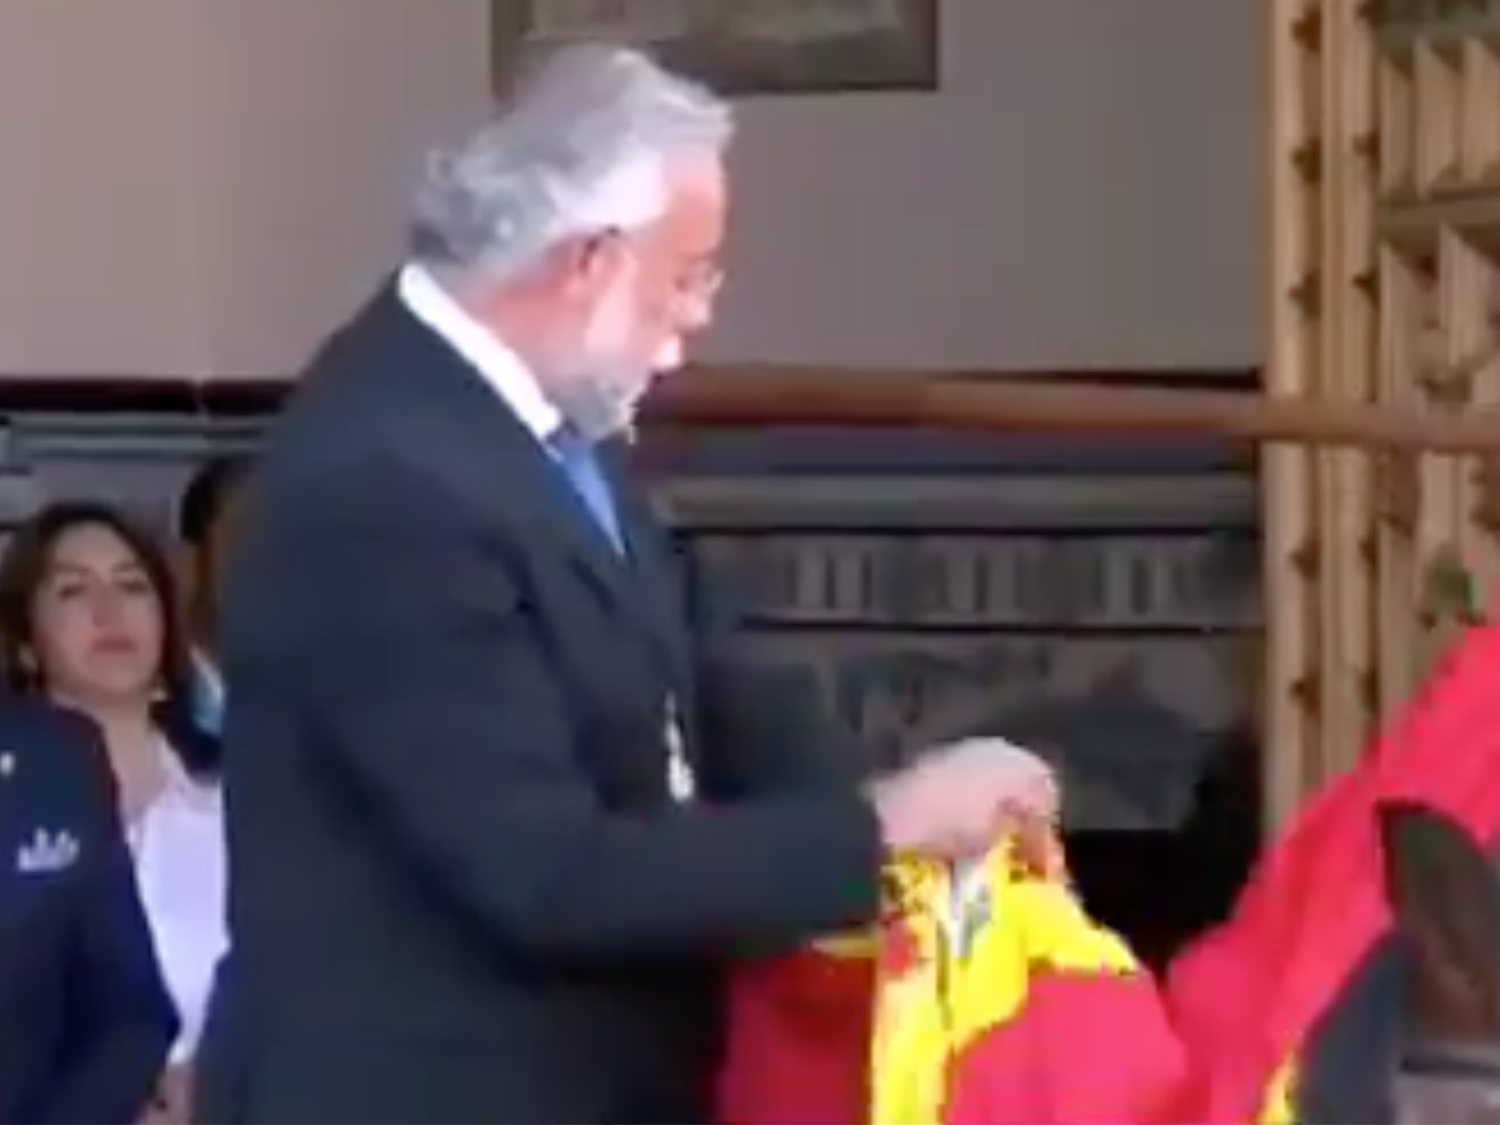 Acusan a un alcalde del PP de limpiarse una caca de paloma con la bandera de España